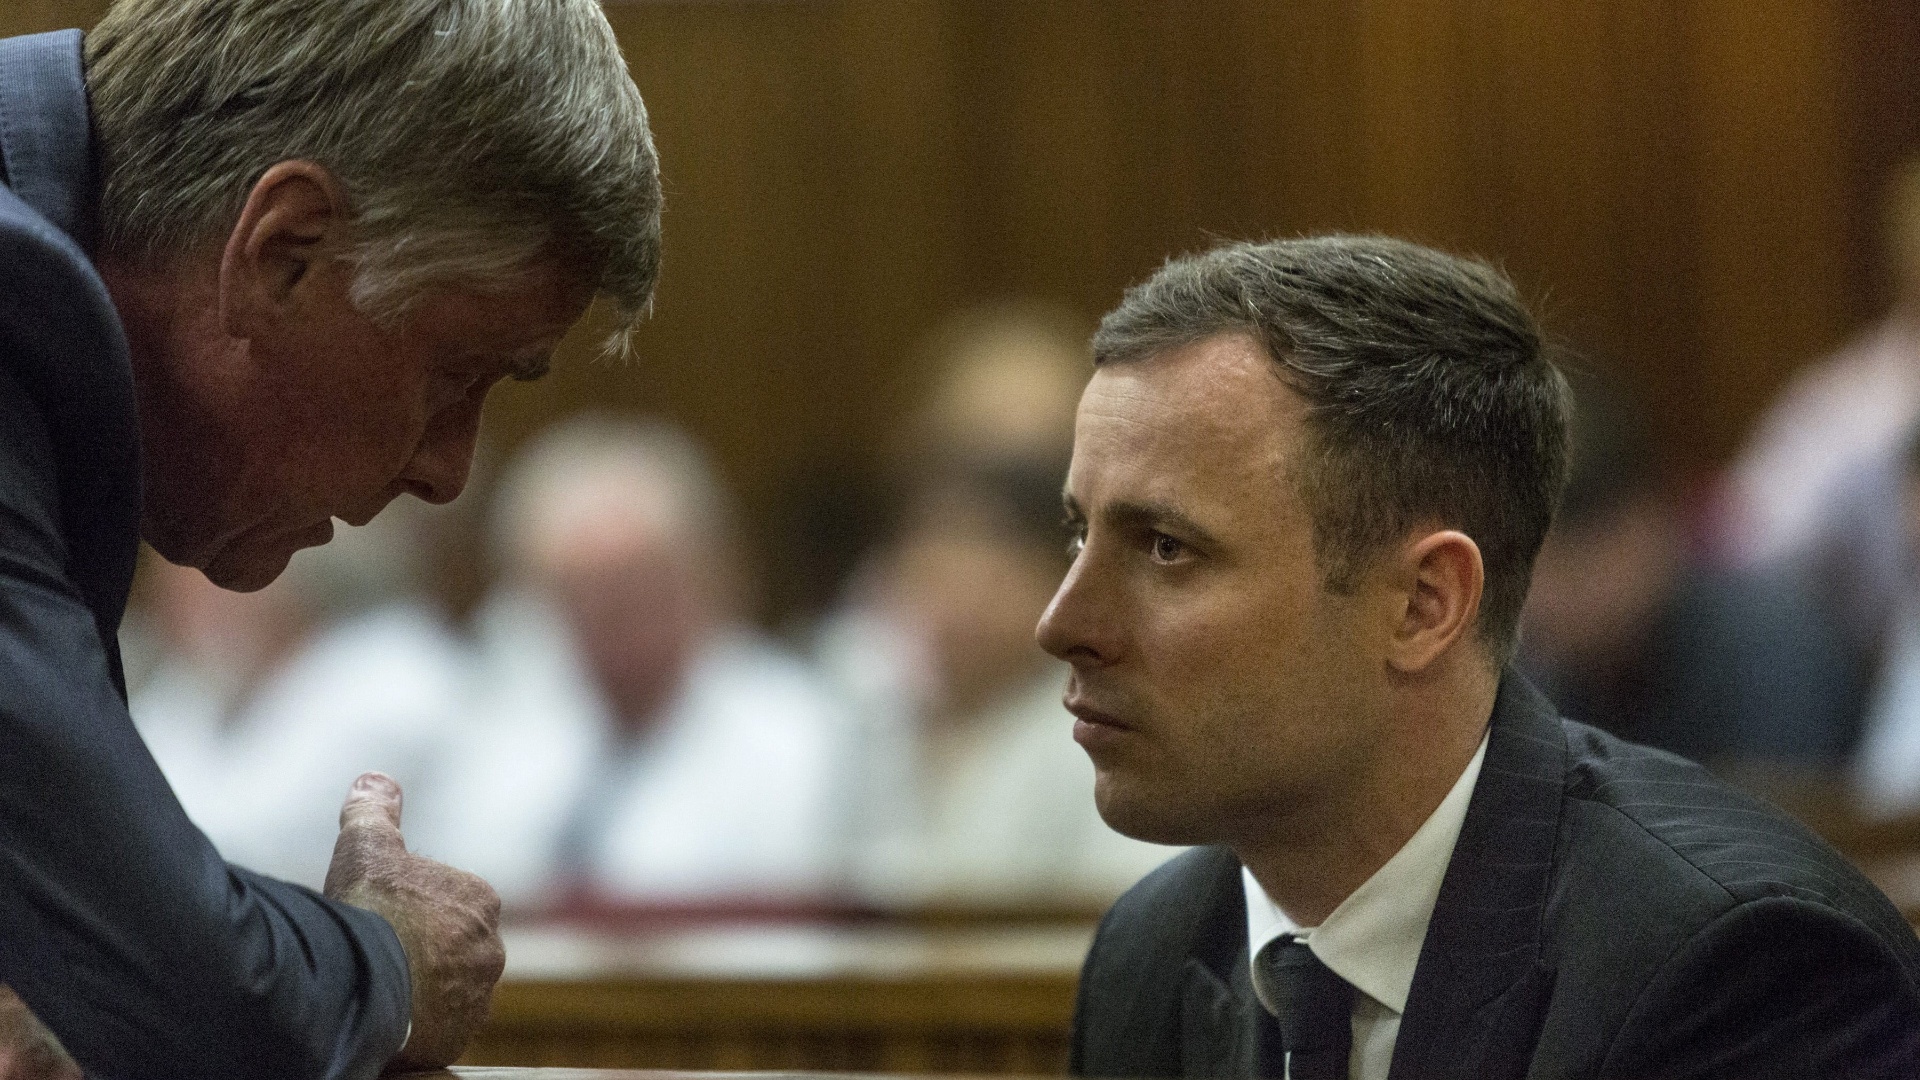 Oscar Pistorius comparece a tribunal para ouvir a sentença de seu homicídio culposo. Ele matou a tiros a ex-namorada, Reeva Steenkamp, em 2013